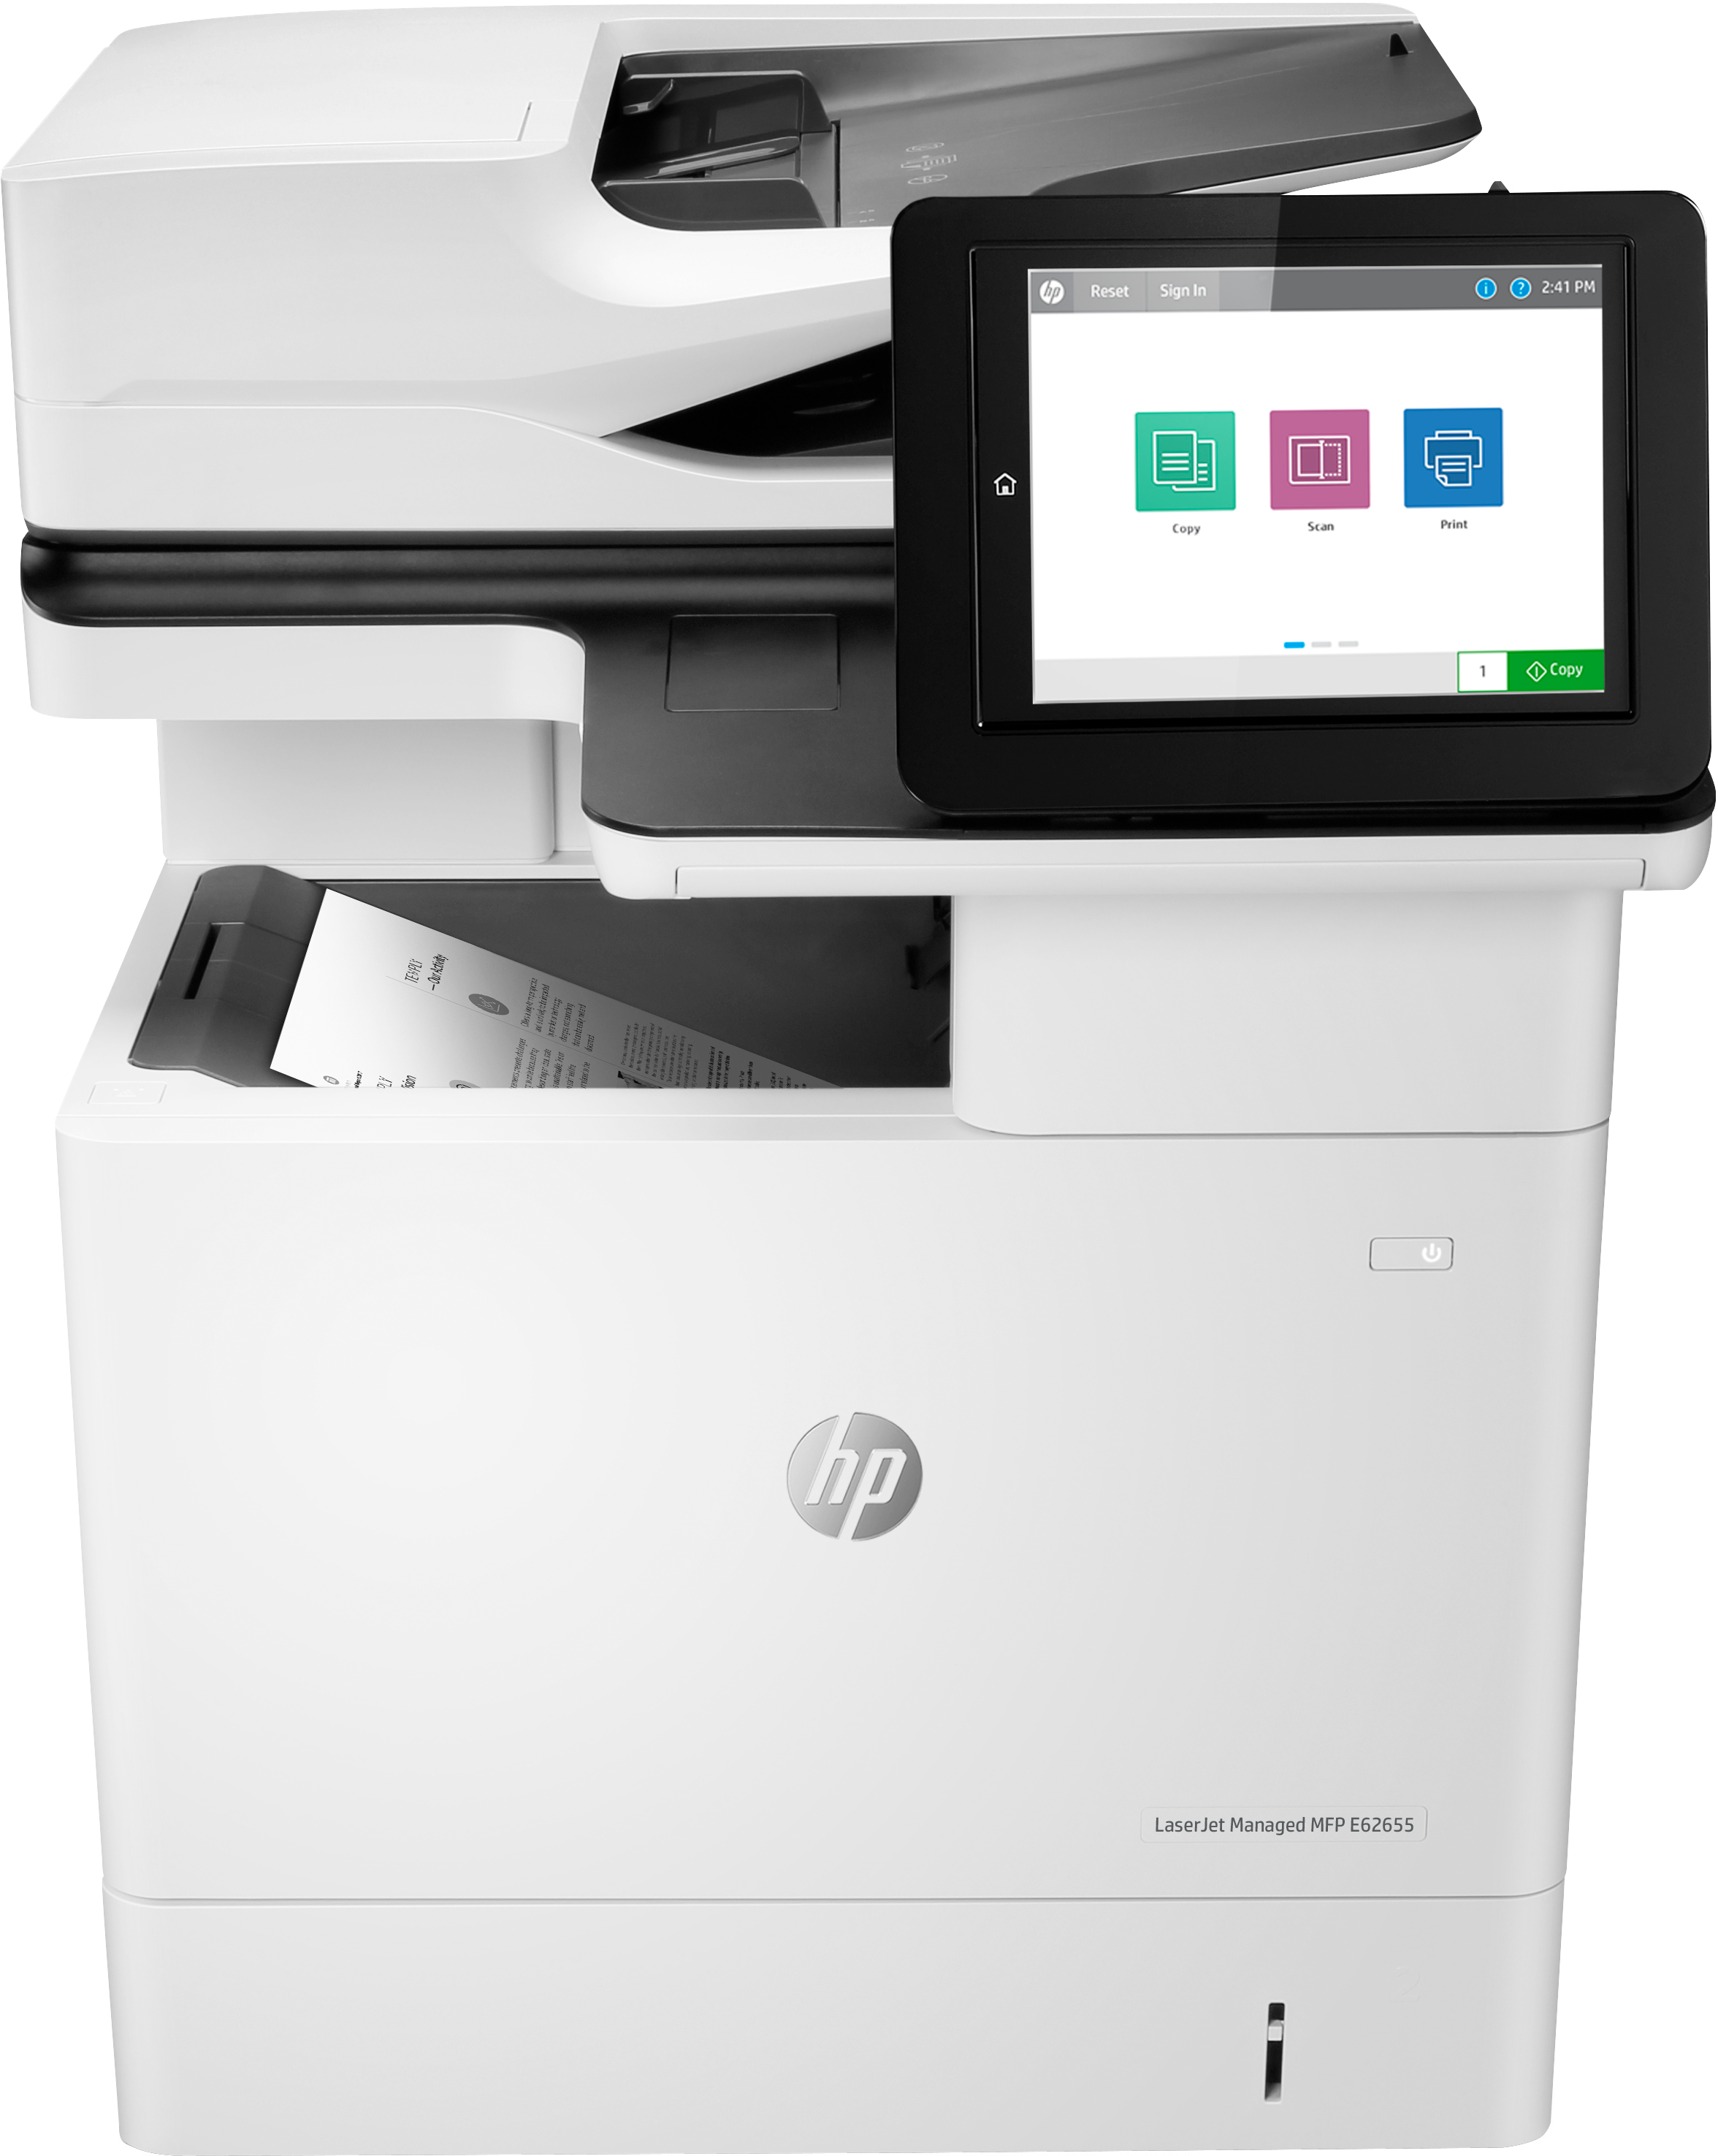 Impresora multifunción HP LaserJet Managed E62655DN